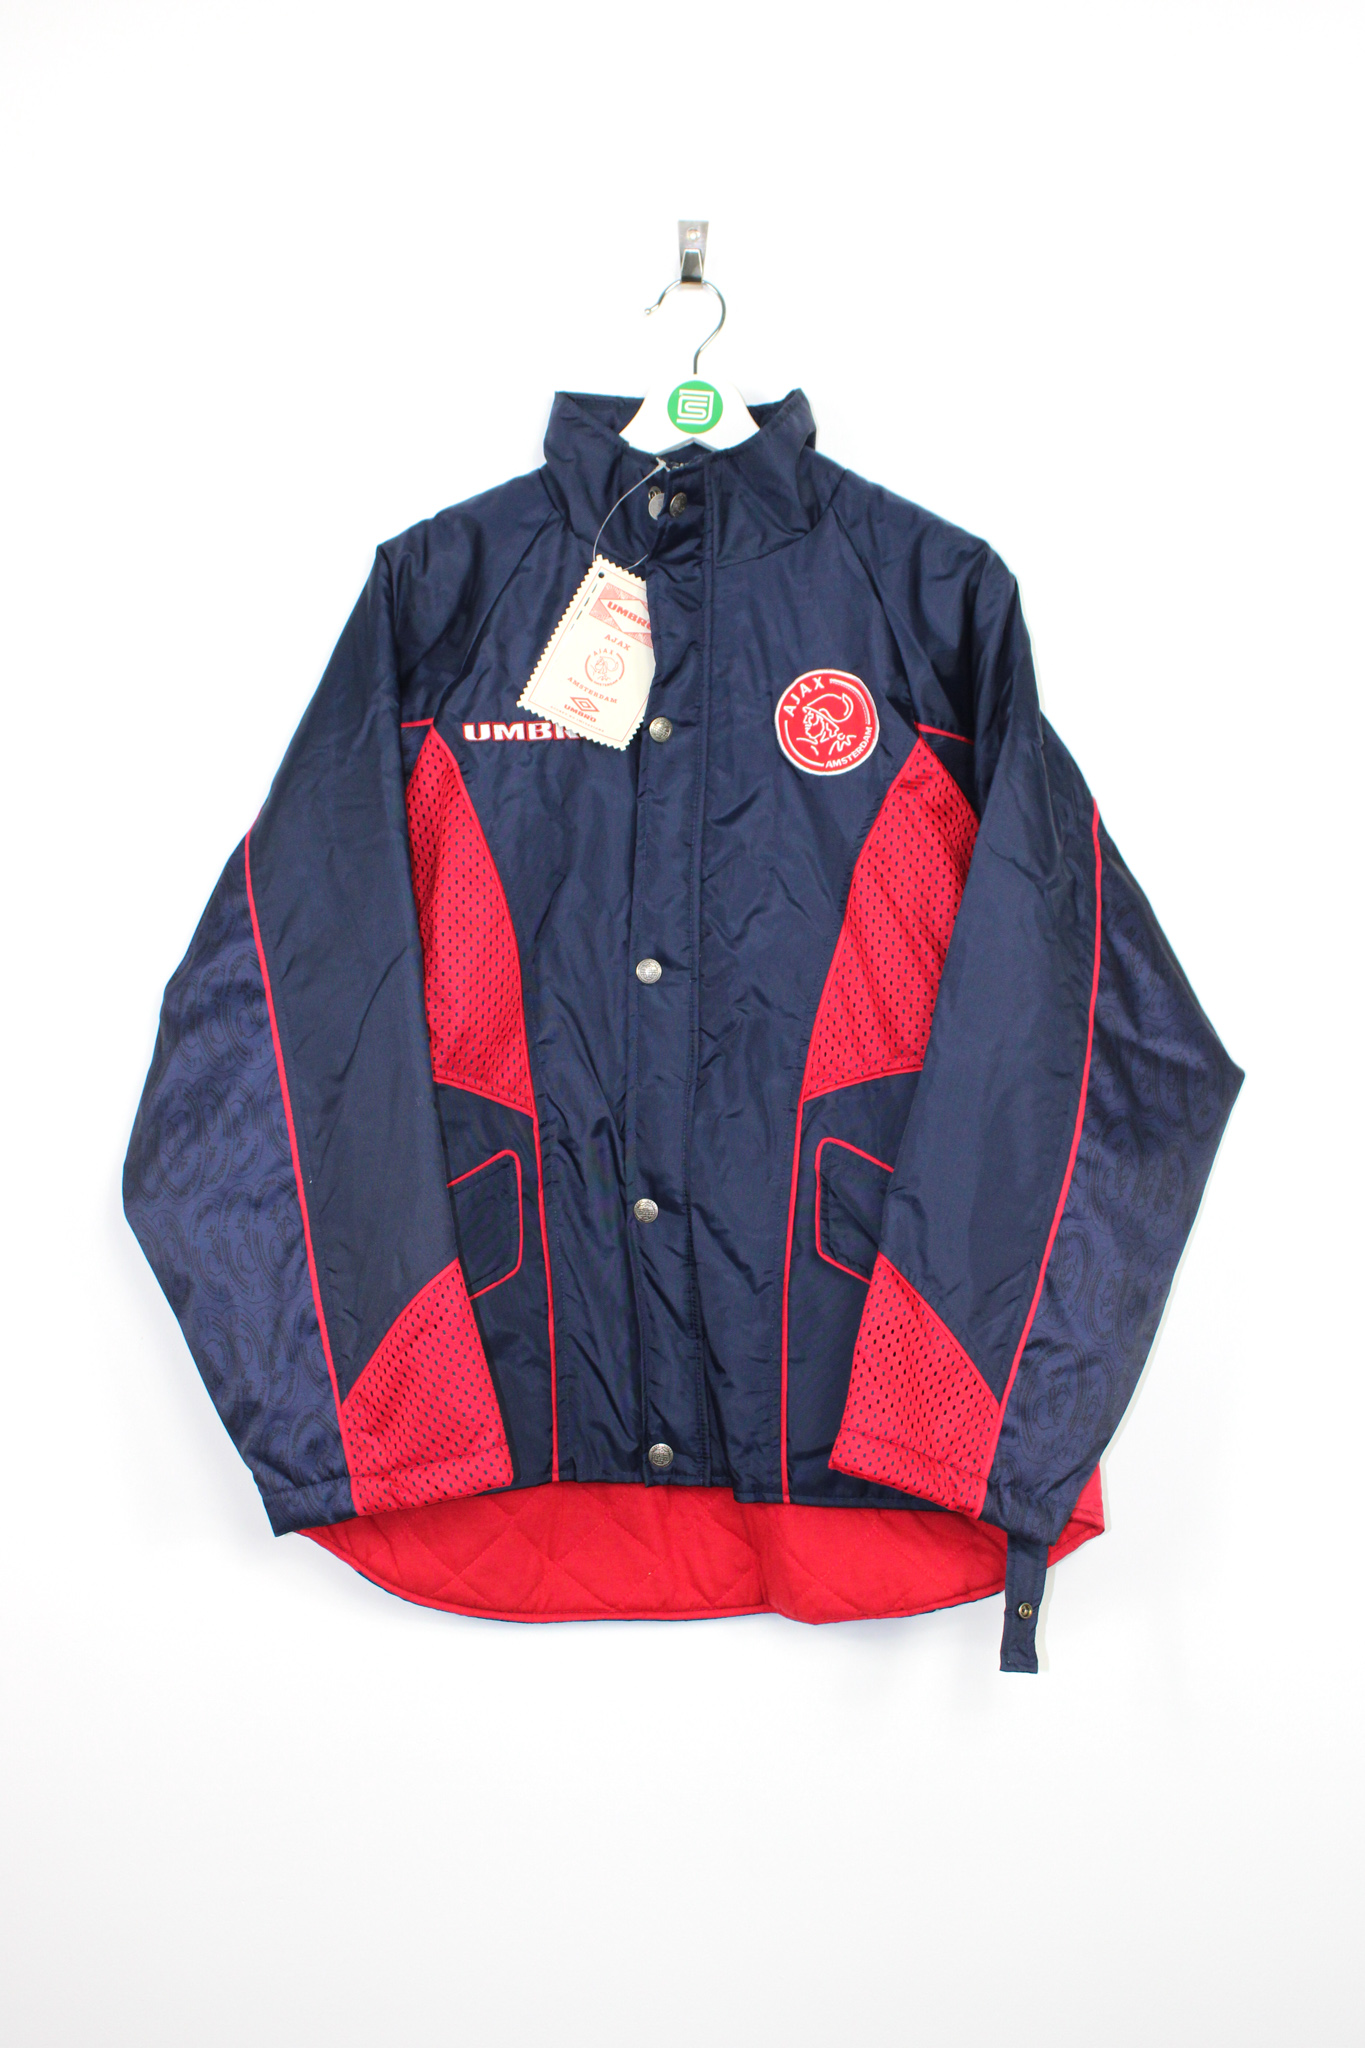 Omgeving Haarvaten Dekbed 1996-97 Ajax x UMBRO *BNWT* bench coat - M • RB - Classic Soccer Jerseys